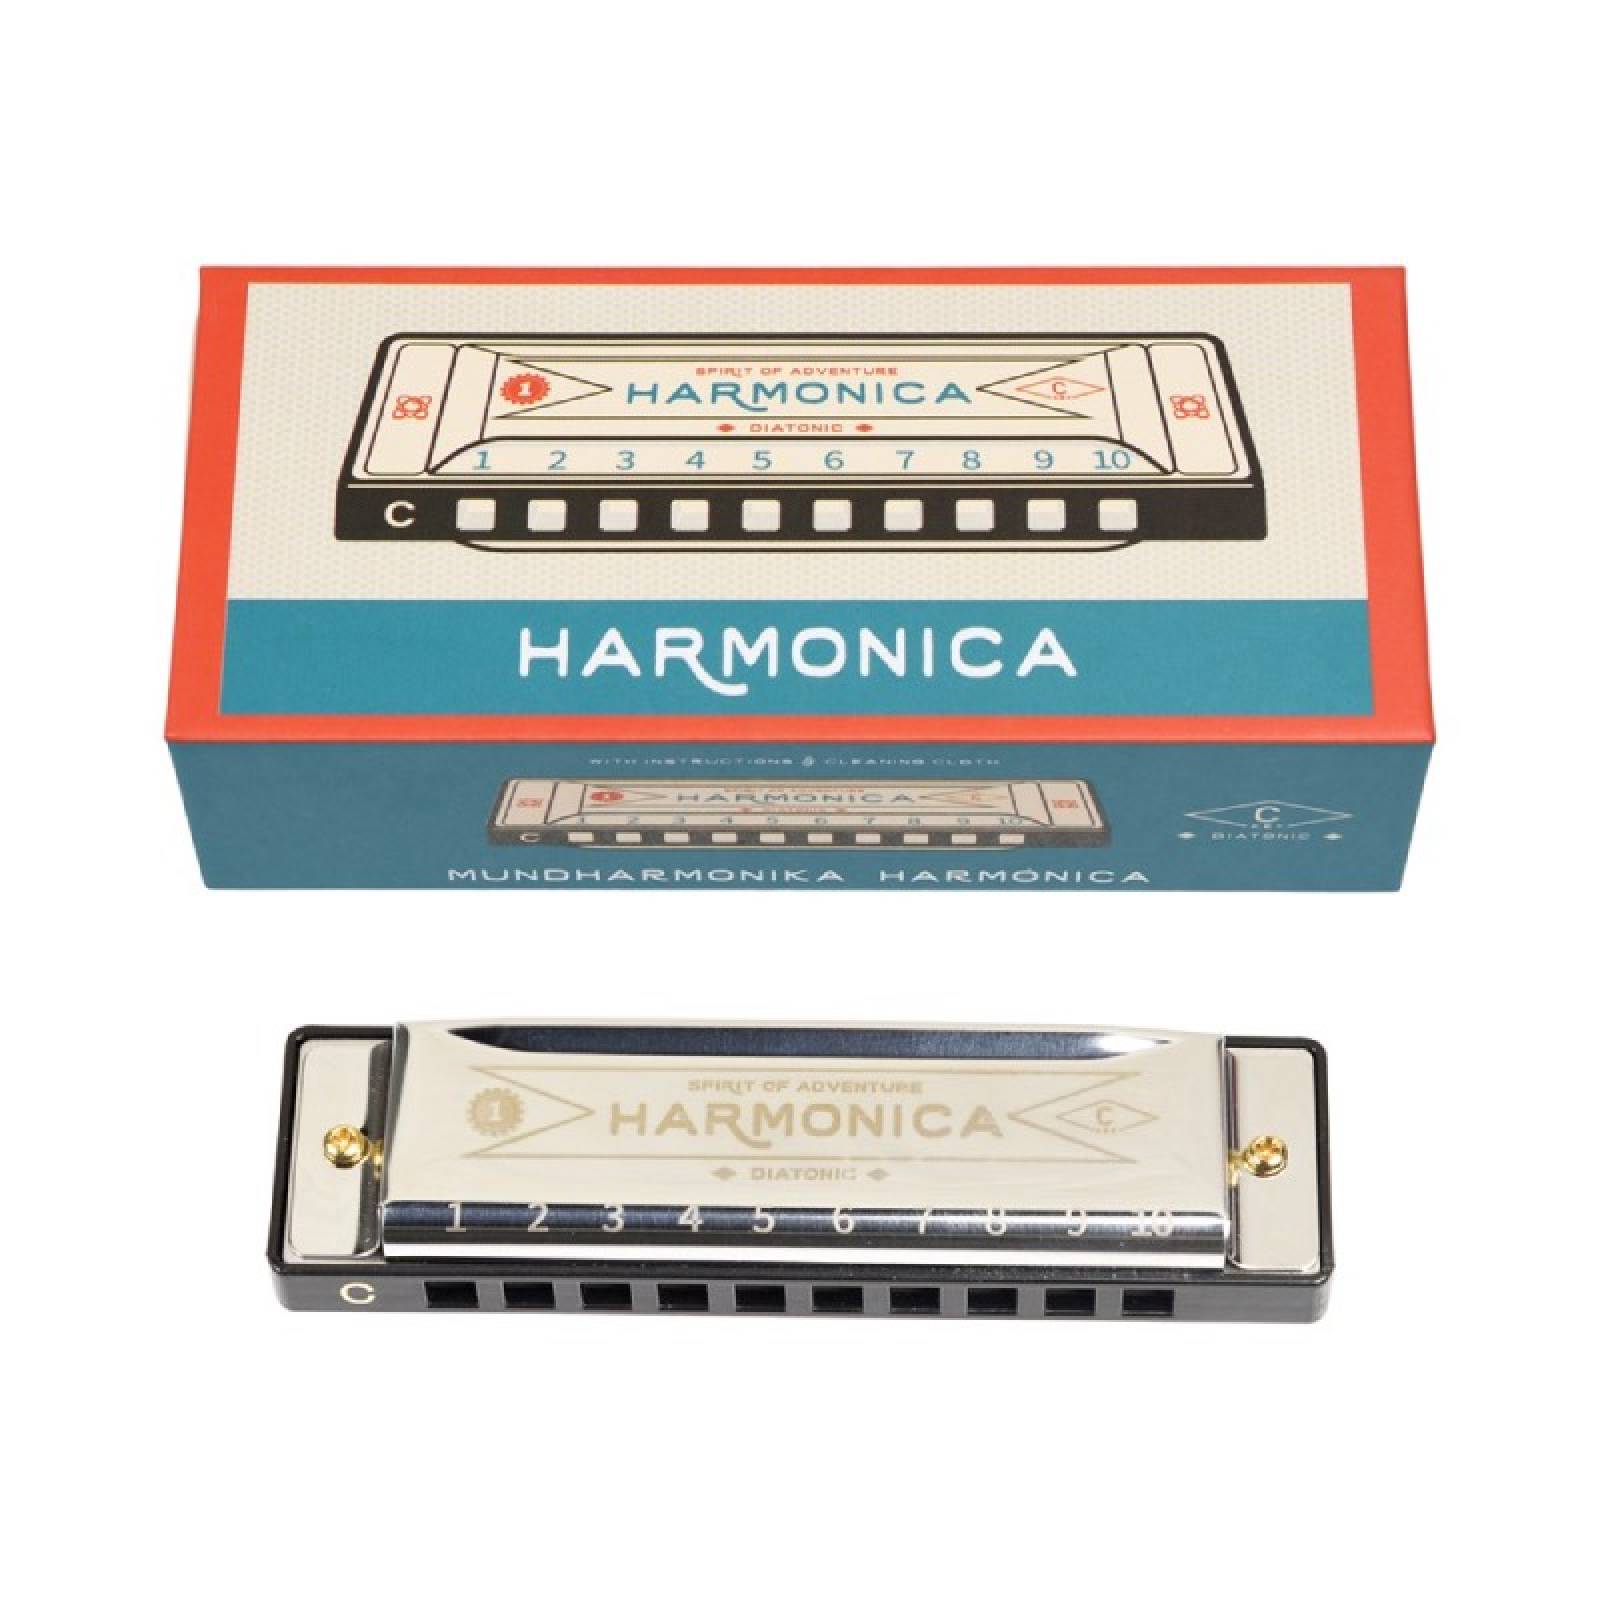 Harmonica In Retro Card Box